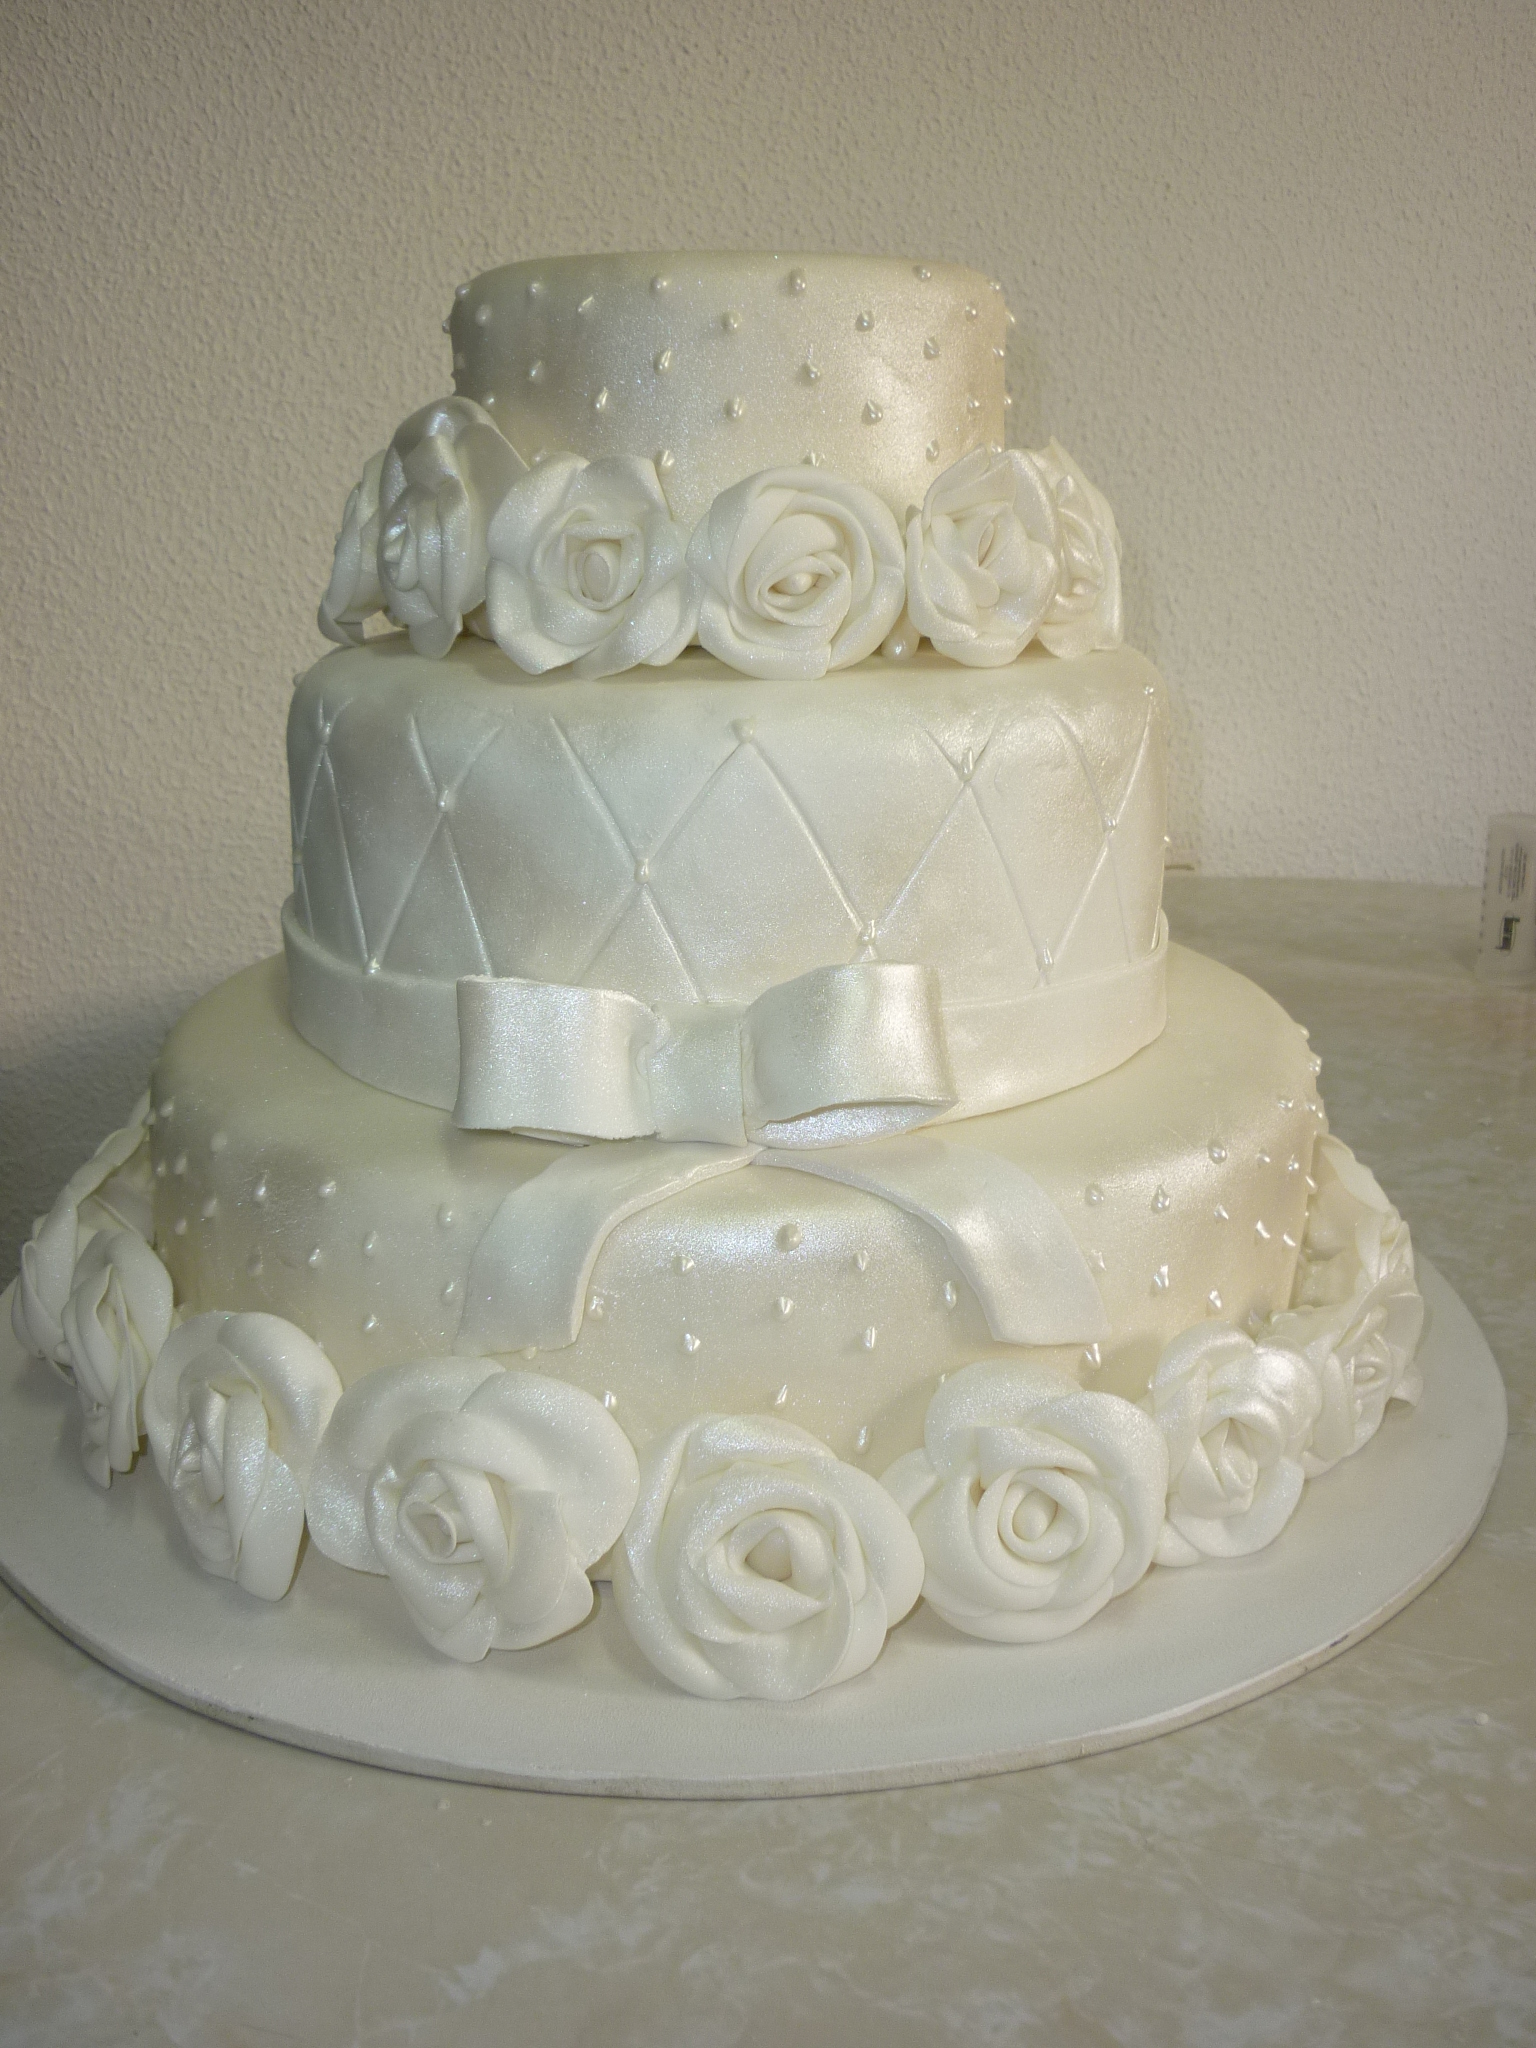 Como escolher o seu bolo de casamento? - Blog